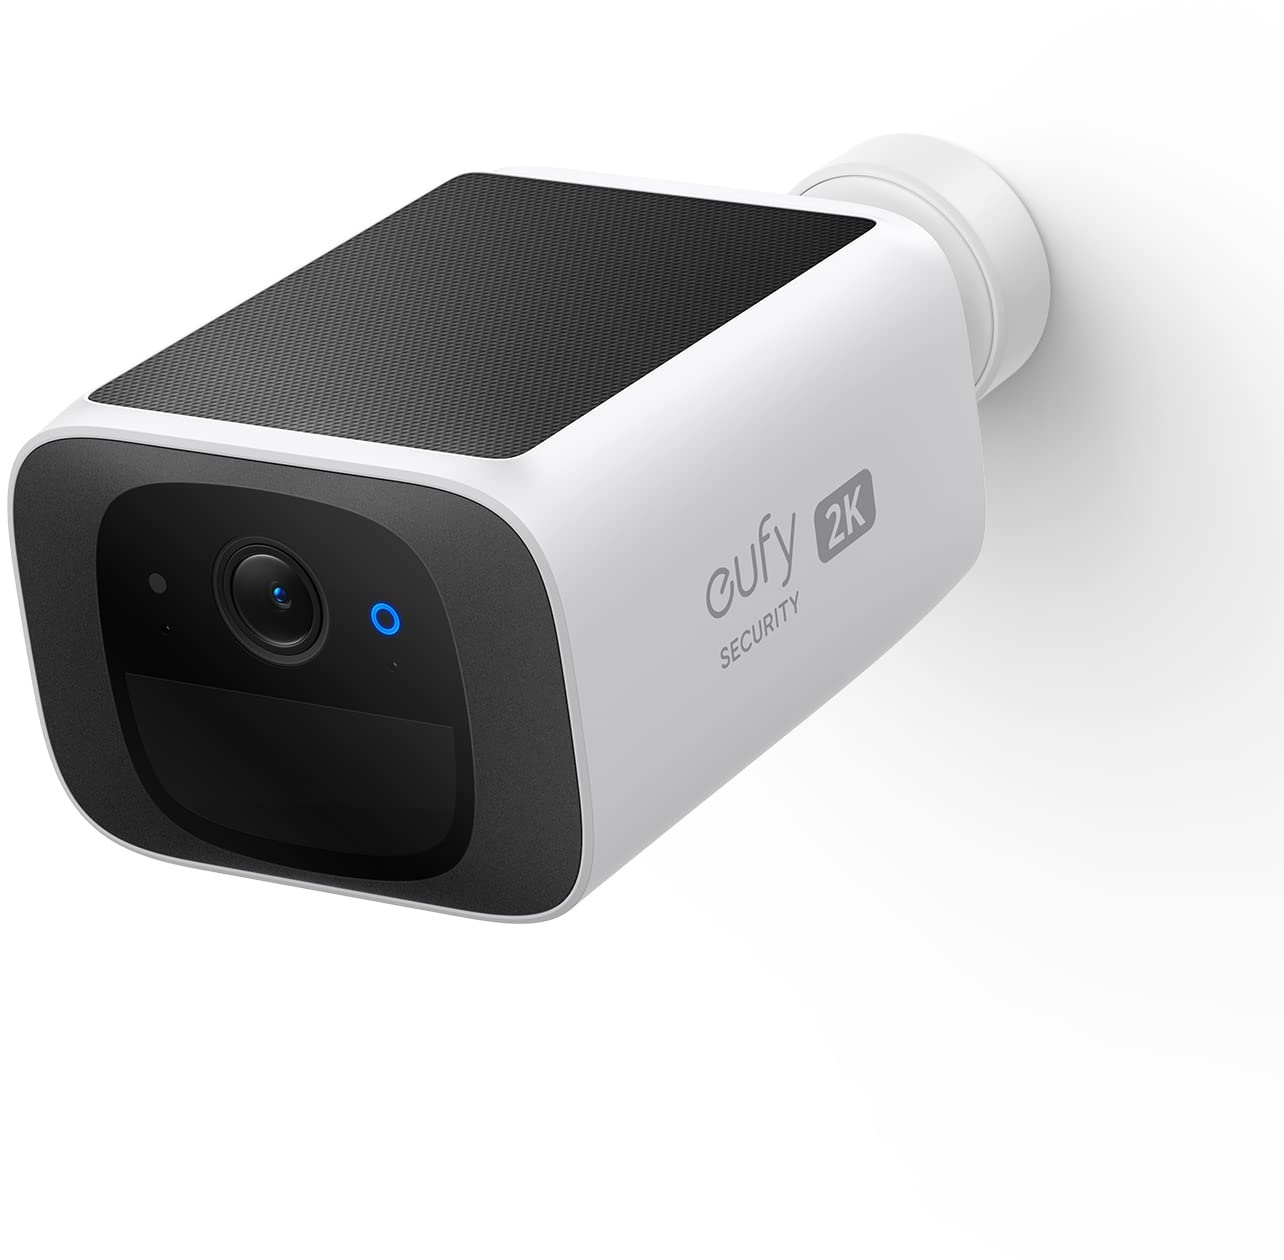 eufy Security überwachungskamera aussen S220 SoloCam, 2K Auflösung, überwachungskamera aussen solar, Nonstop Power mit Solar, 2,4 GHz WLAN, ohne ABO, ohne monatliche Kosten, Gebührenfreie Nutzung